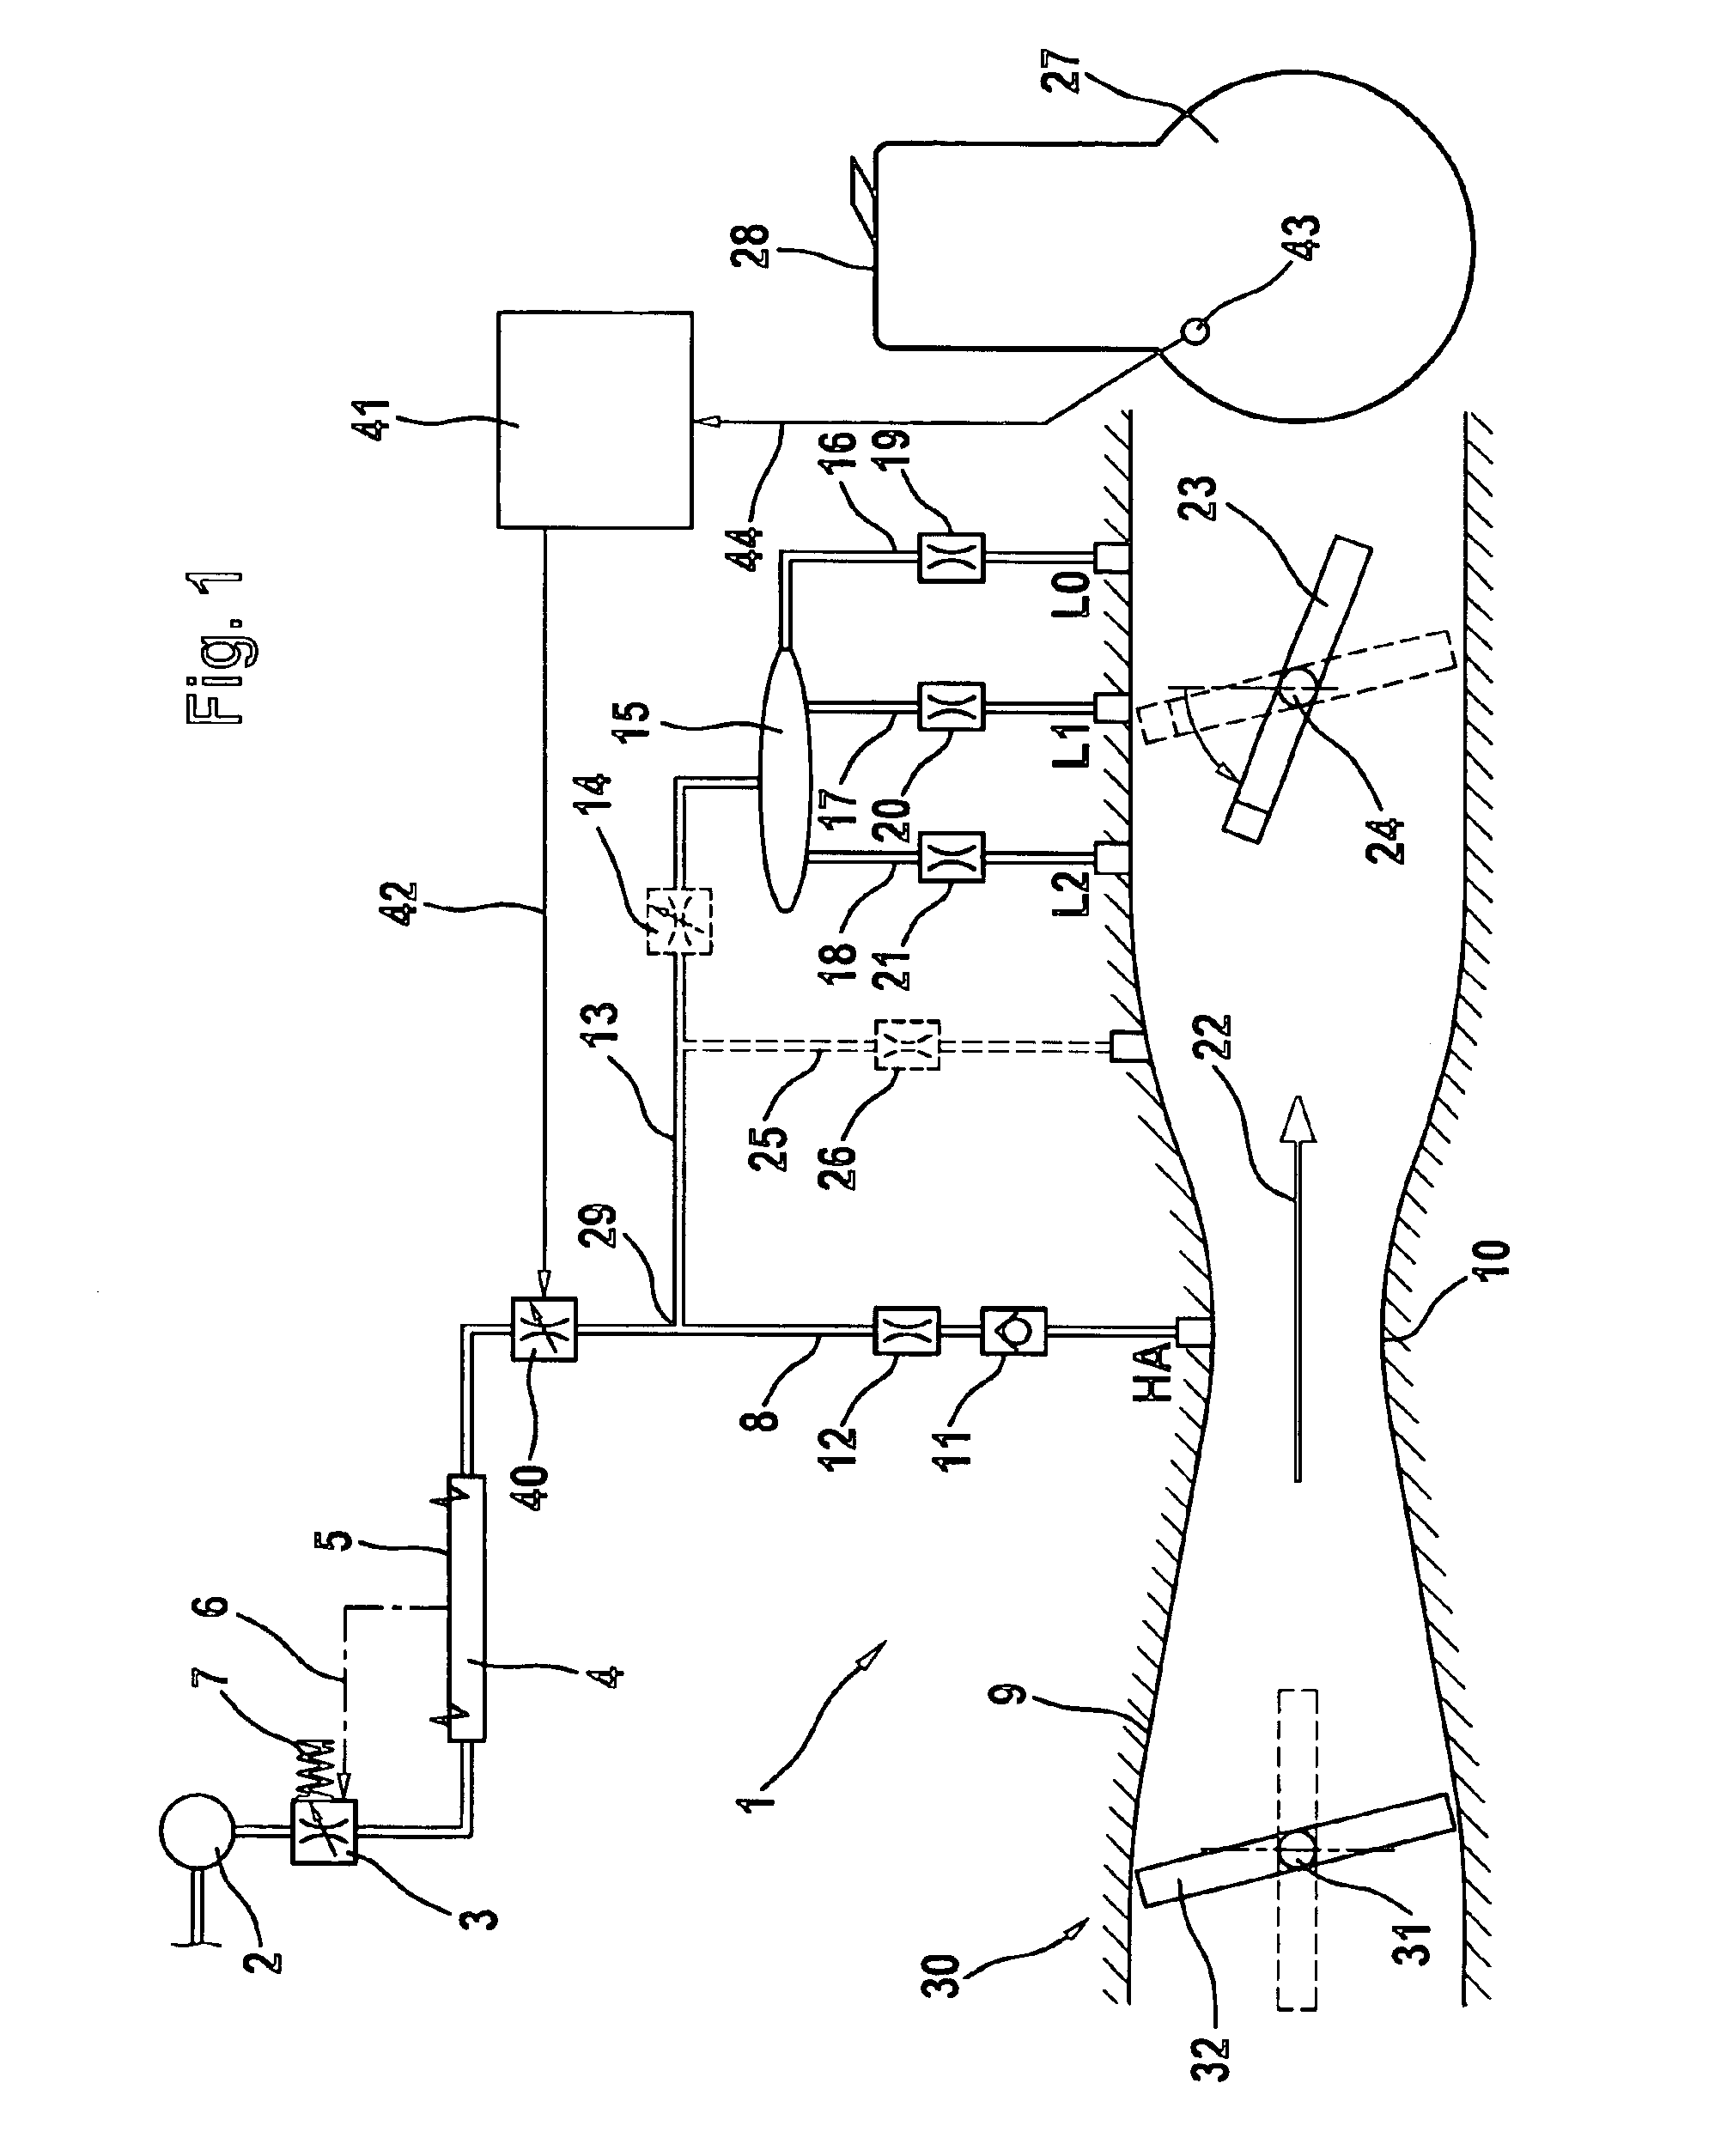 Carburetor arrangement for an internal combustion engine